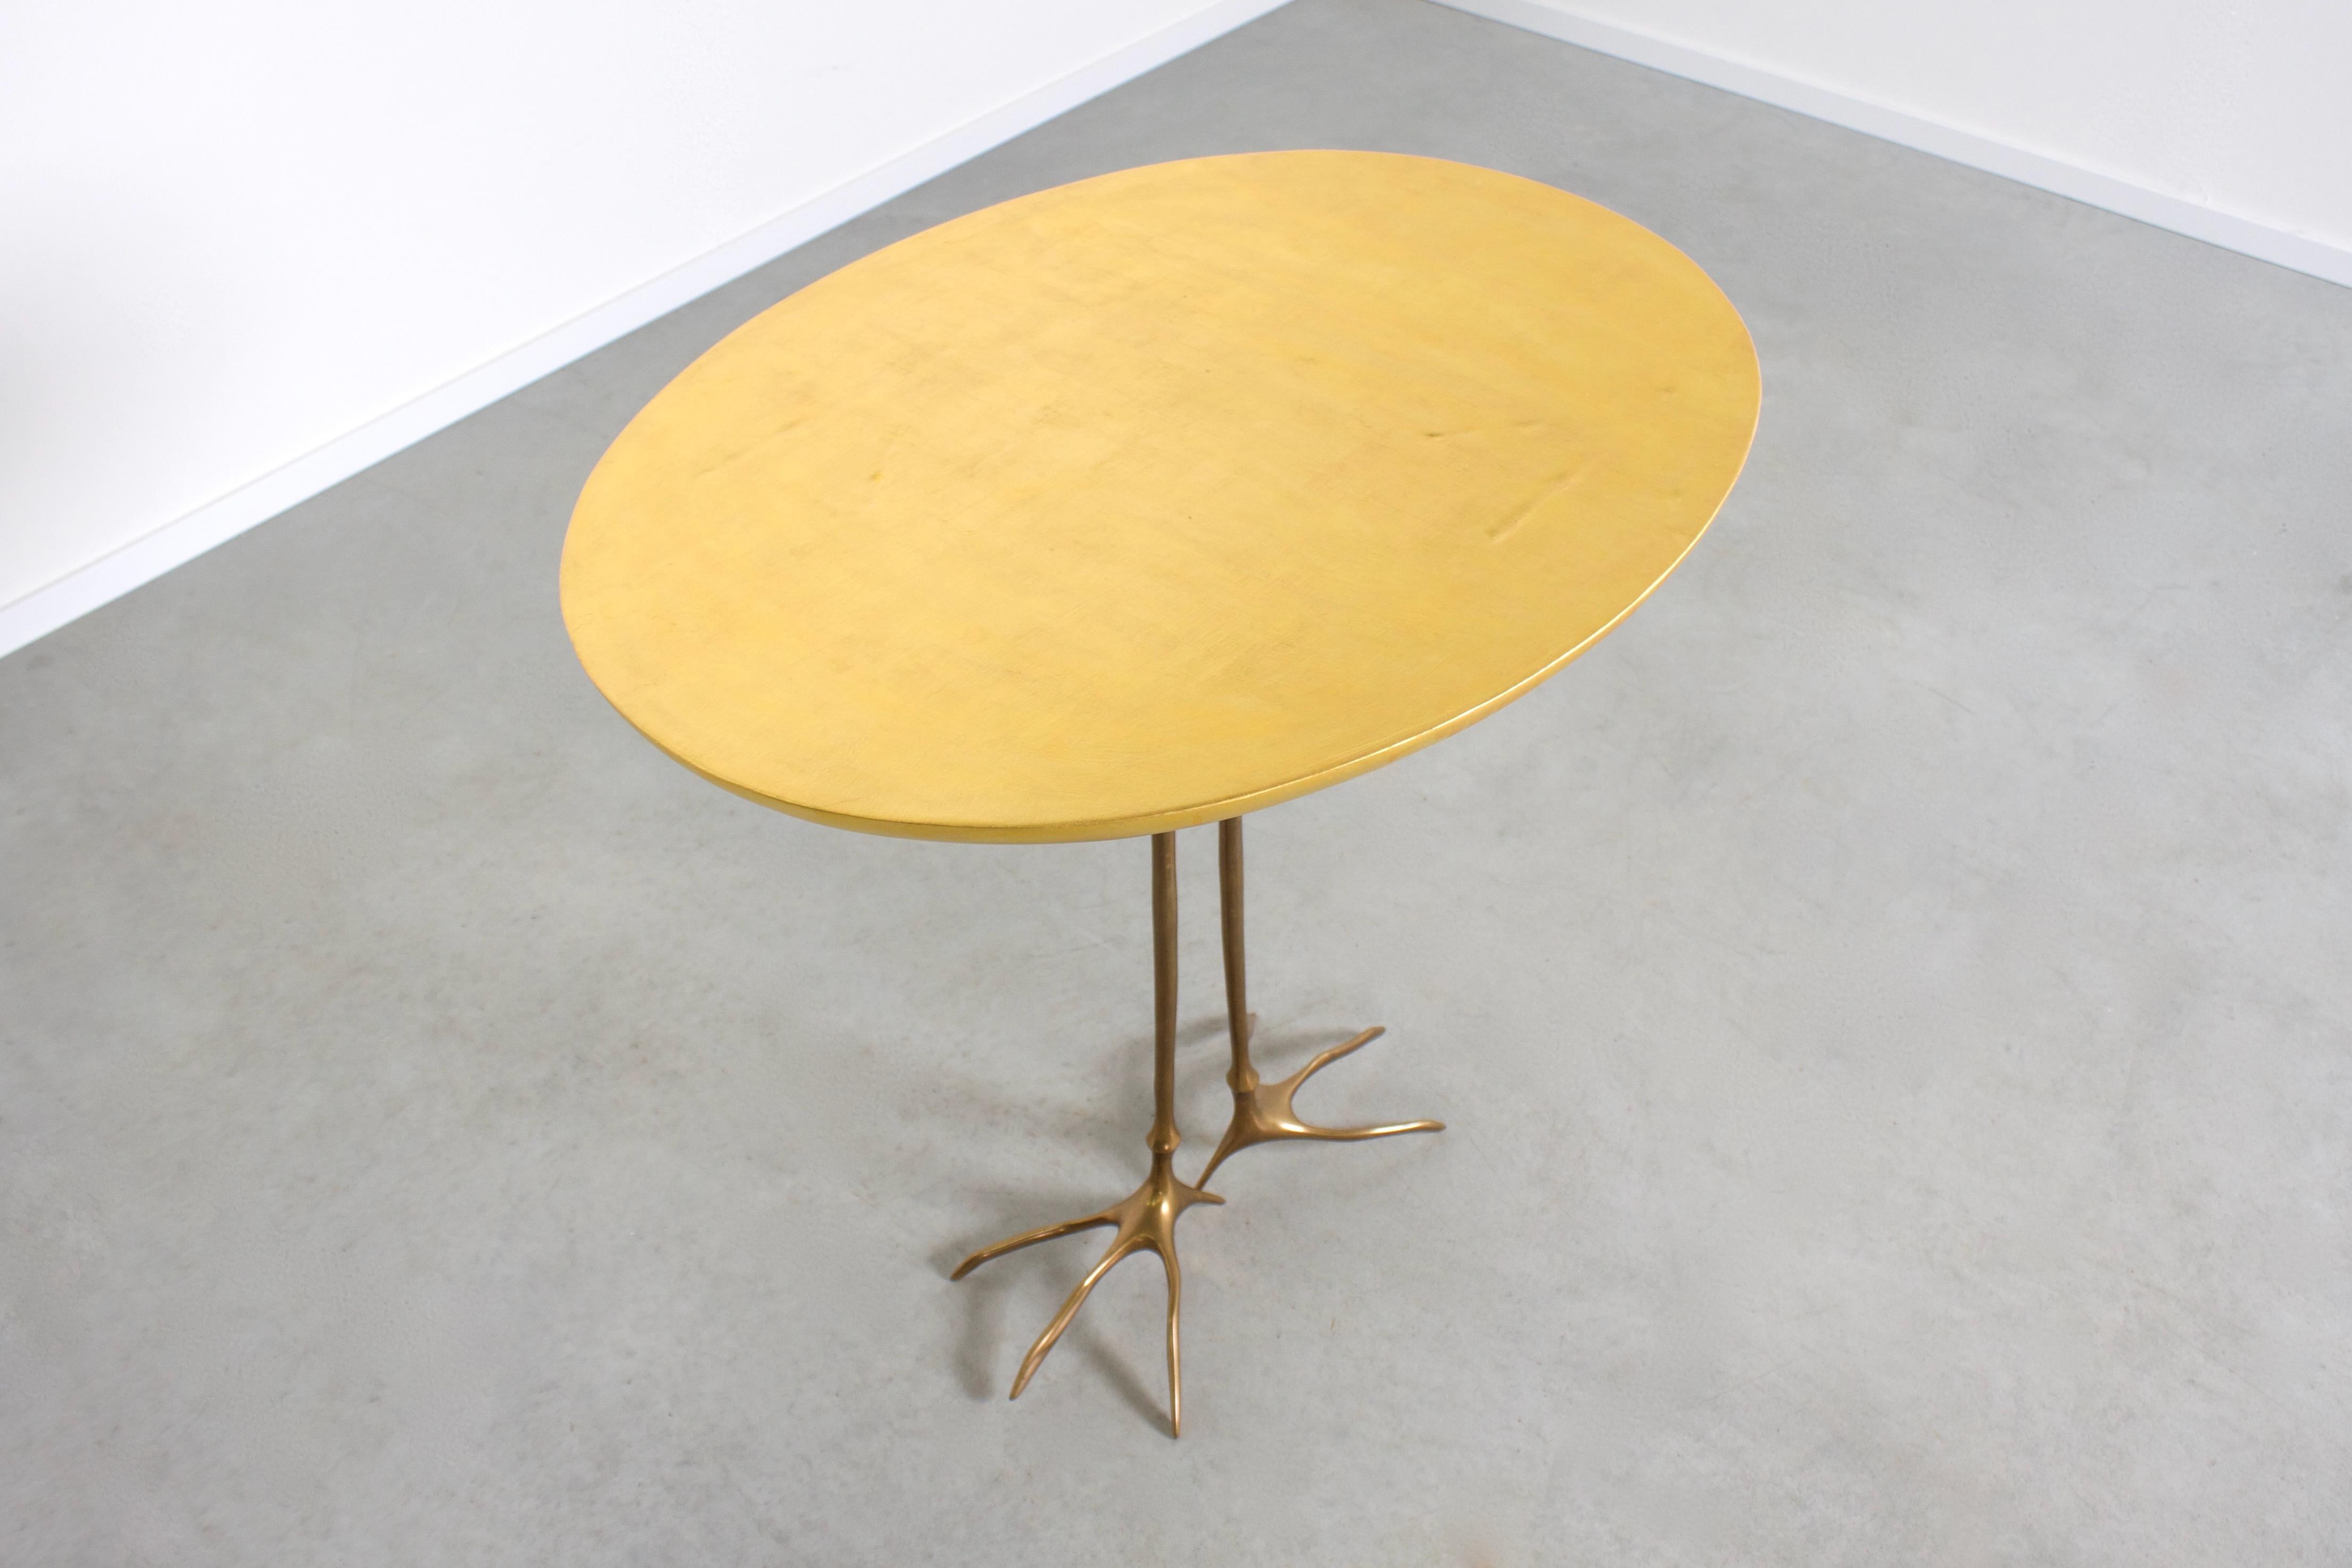 Original 'Traccia' Tisch in sehr gutem Zustand.

Entworfen von Meret Oppenheim 

Produziert von Studio Simon's Collezione Ultramobili, Mailand, 1972

Die Tischplatte ist mit Blattgold überzogen und hat in die Oberfläche geprägte Vogelspuren.

Die